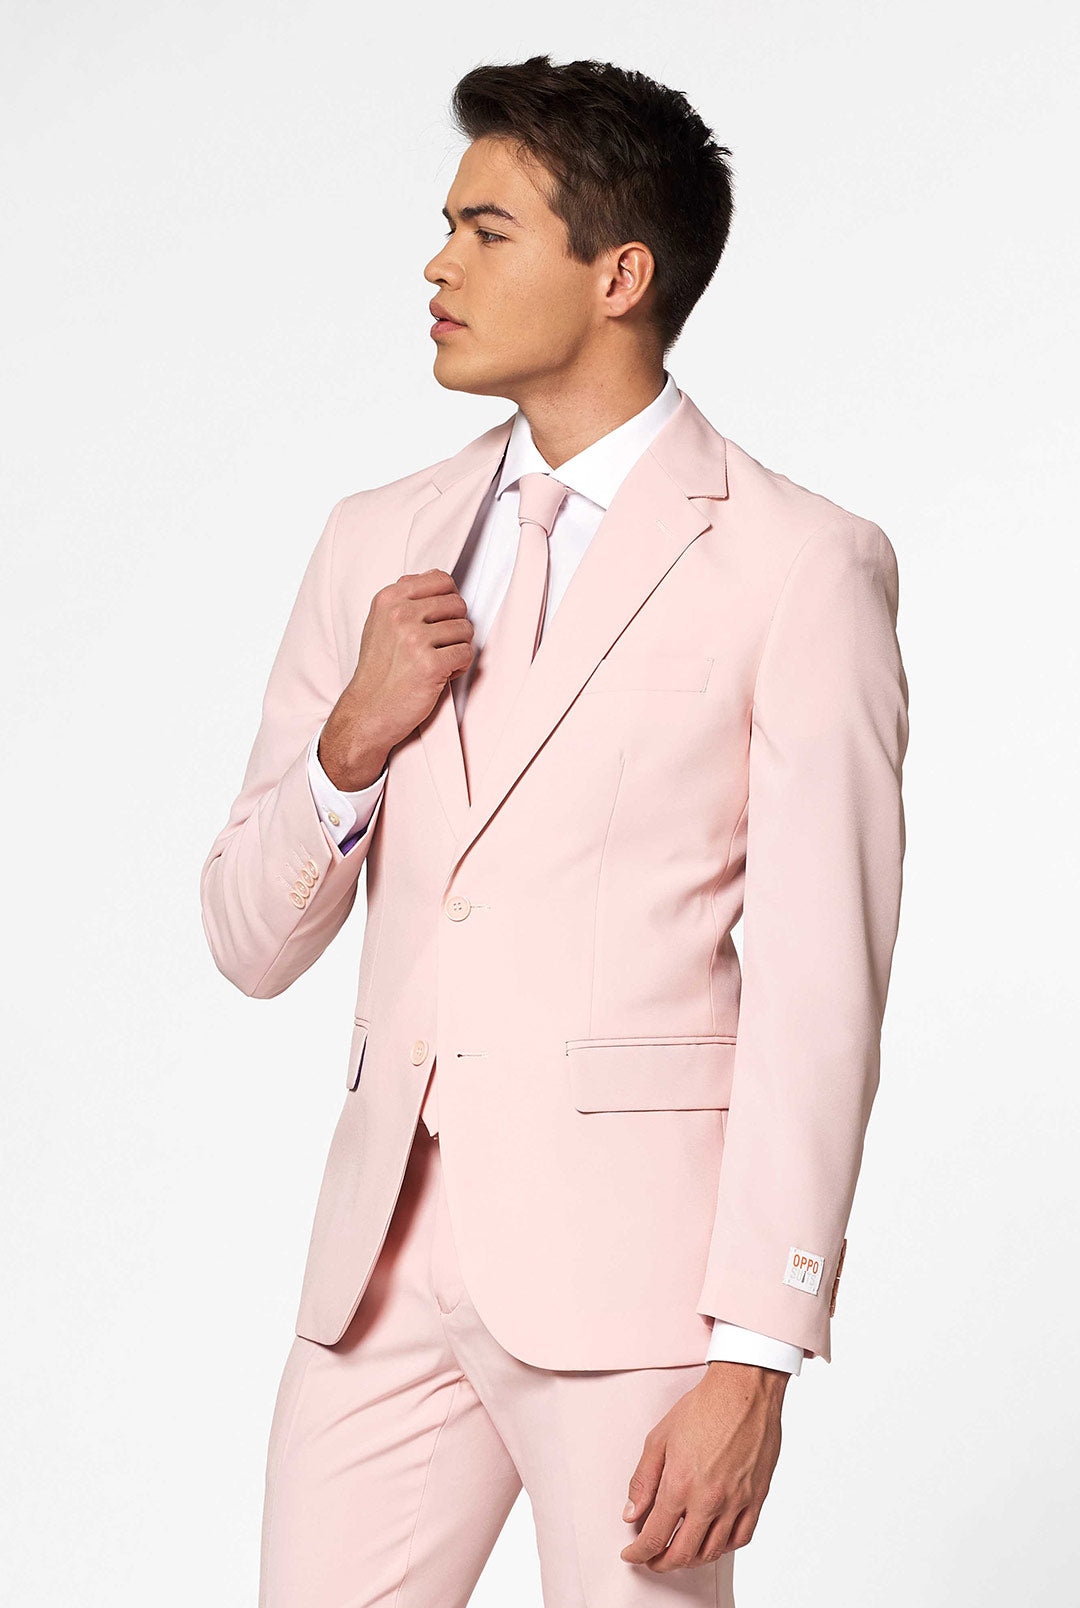 pink suit dress